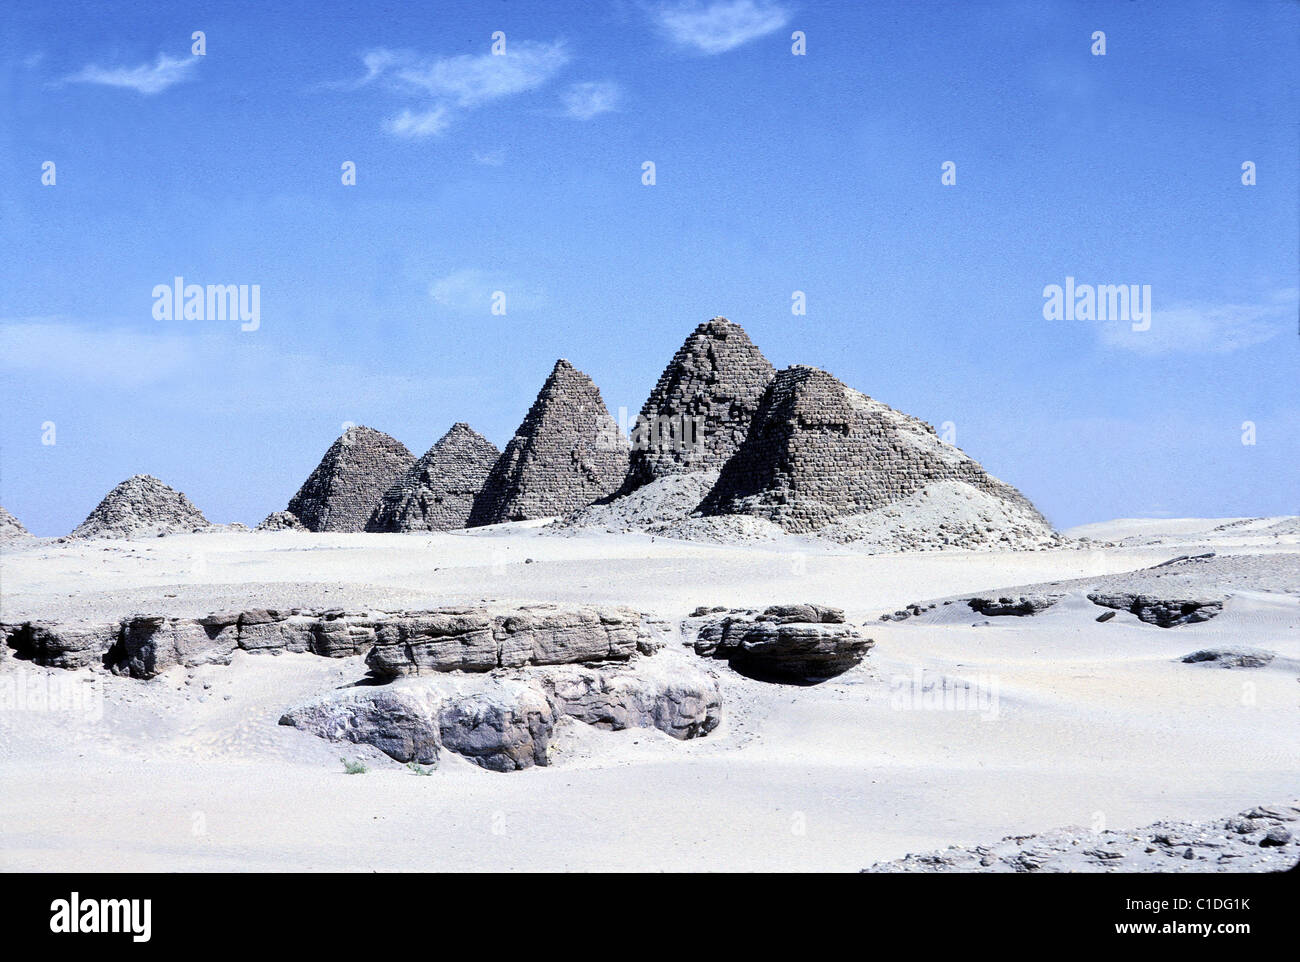 Sudan, Meroe site, Nuri pyramids Stock Photo